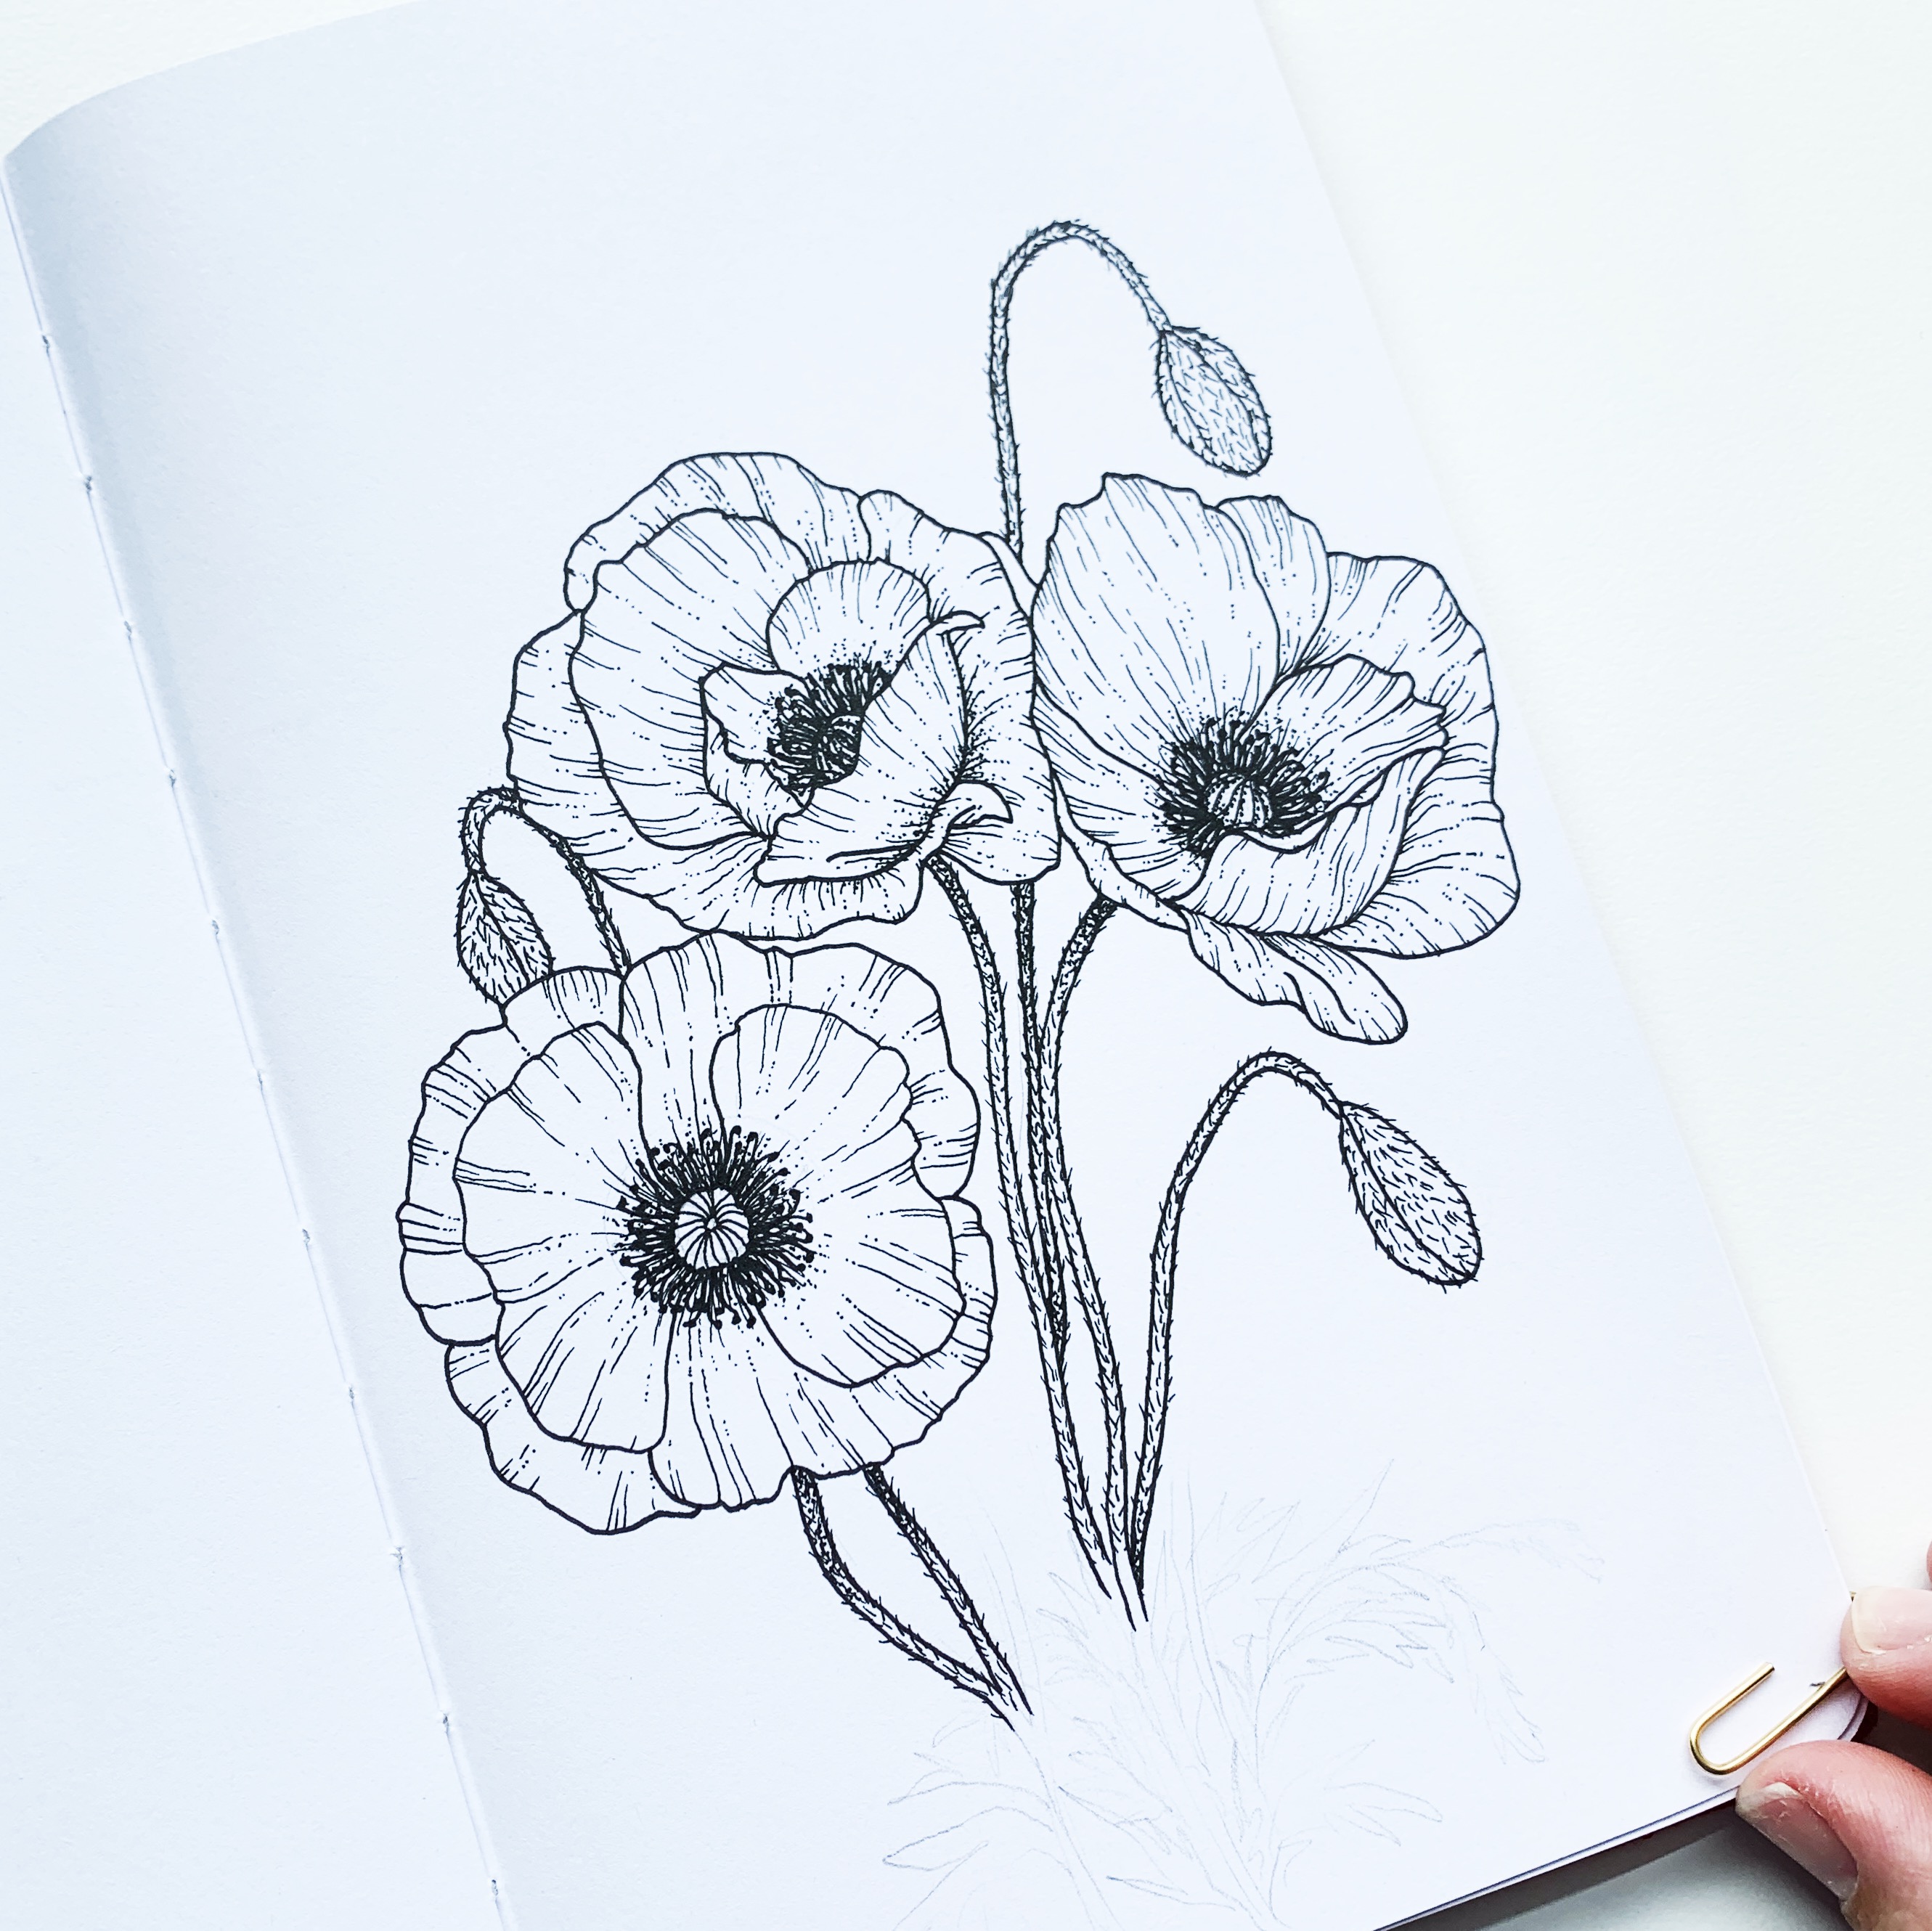 Poppy Images To Draw digiscrapru